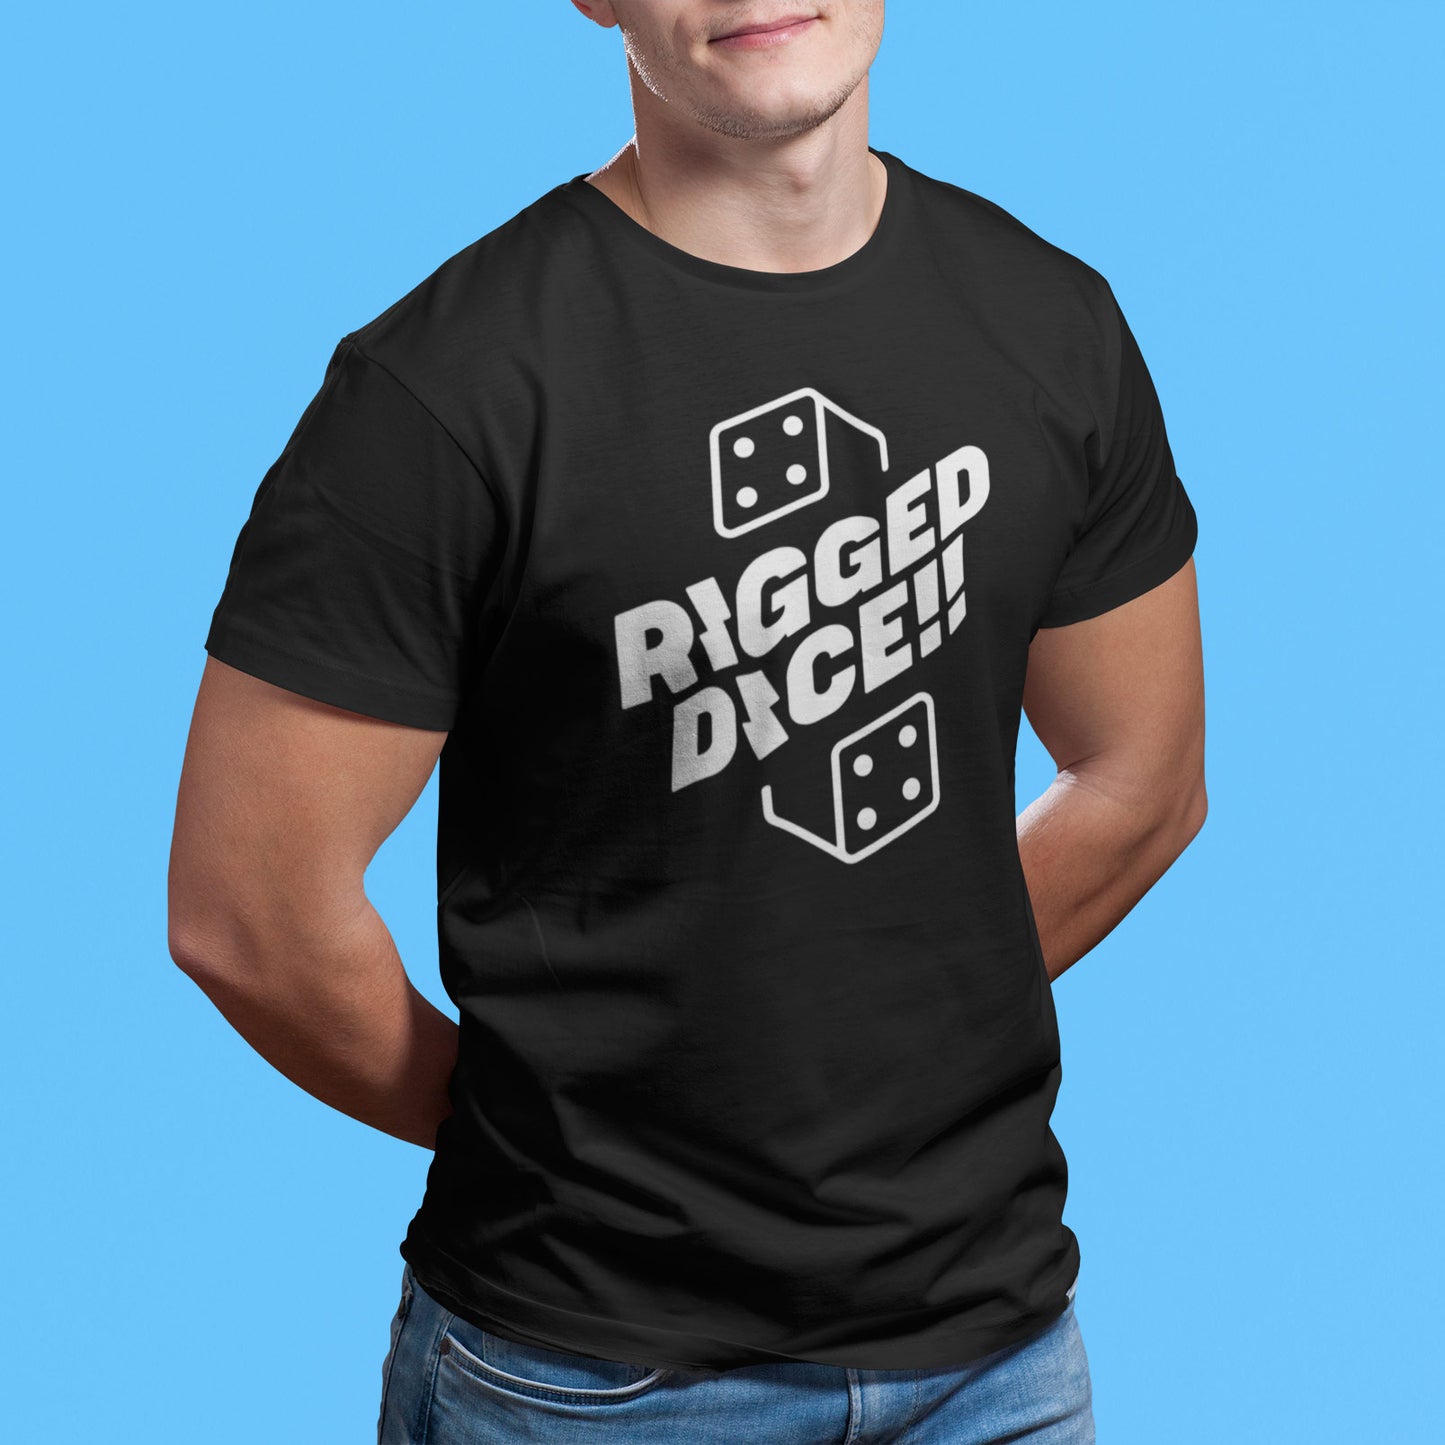 RIGGED DICE, Backgammon t-shirt, unisex - Backgammon Galaxy T-shirt